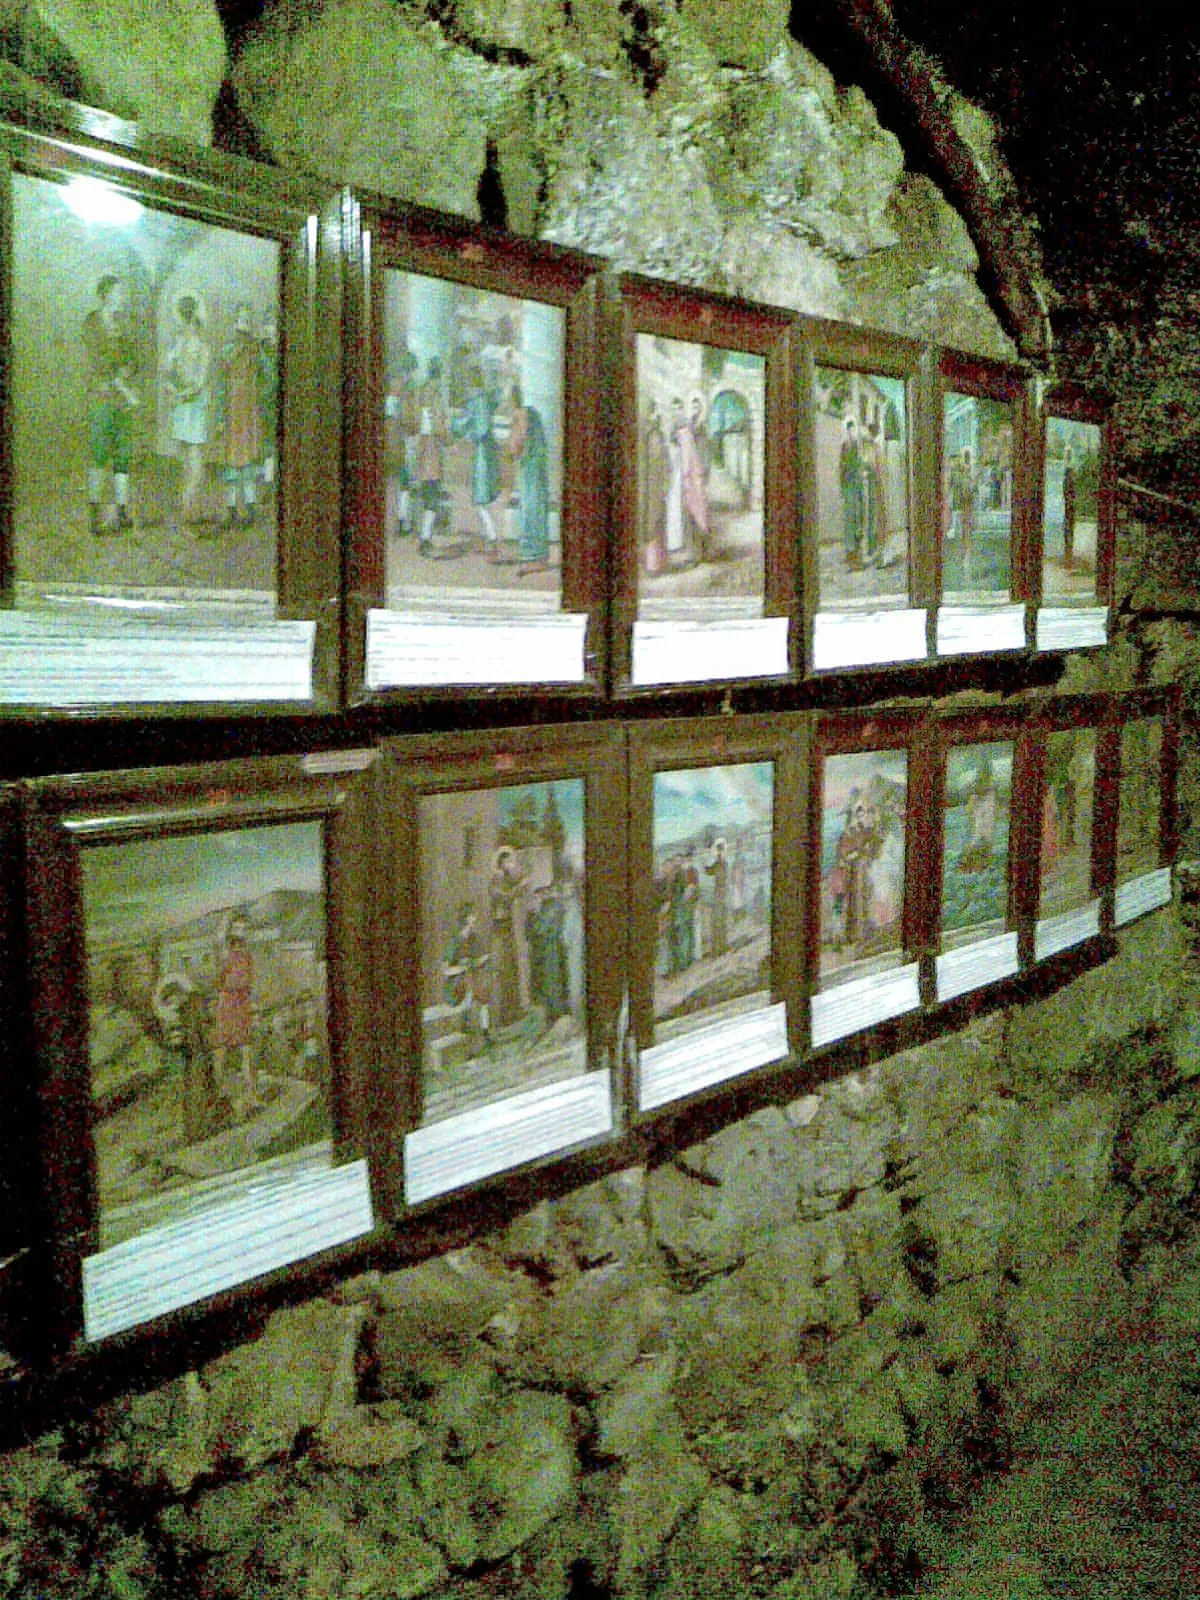 لوحات في كنيسة حنانيا في حي باب توما